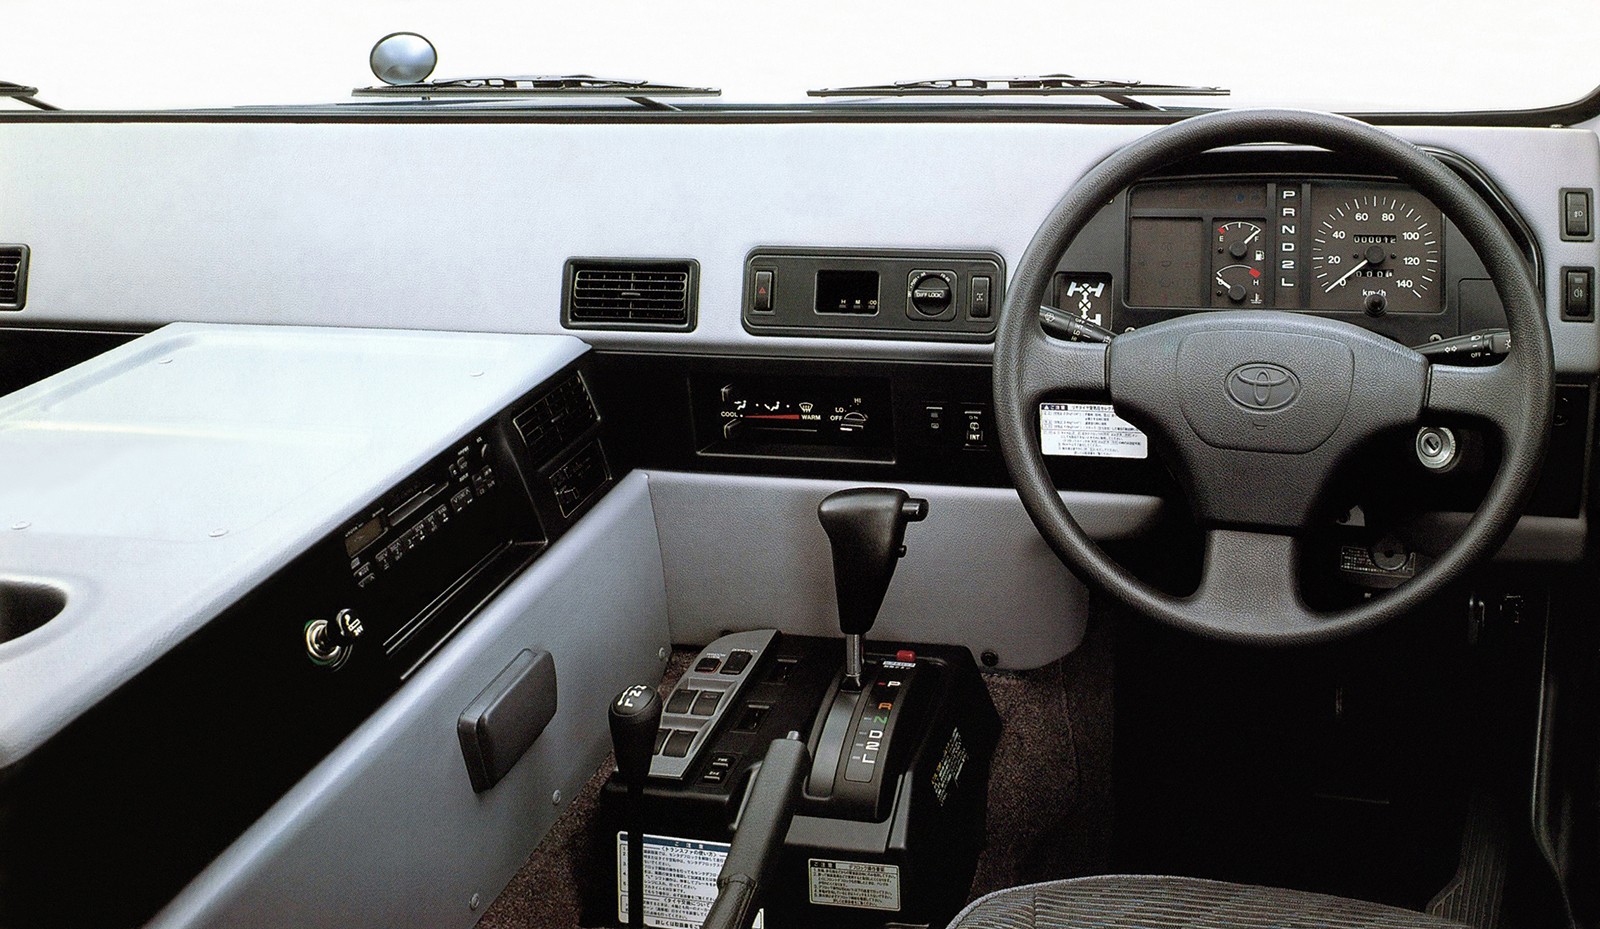 Когда Hummer – это слишком банально: стоит ли покупать Toyota Mega Cruiser за 3 миллиона